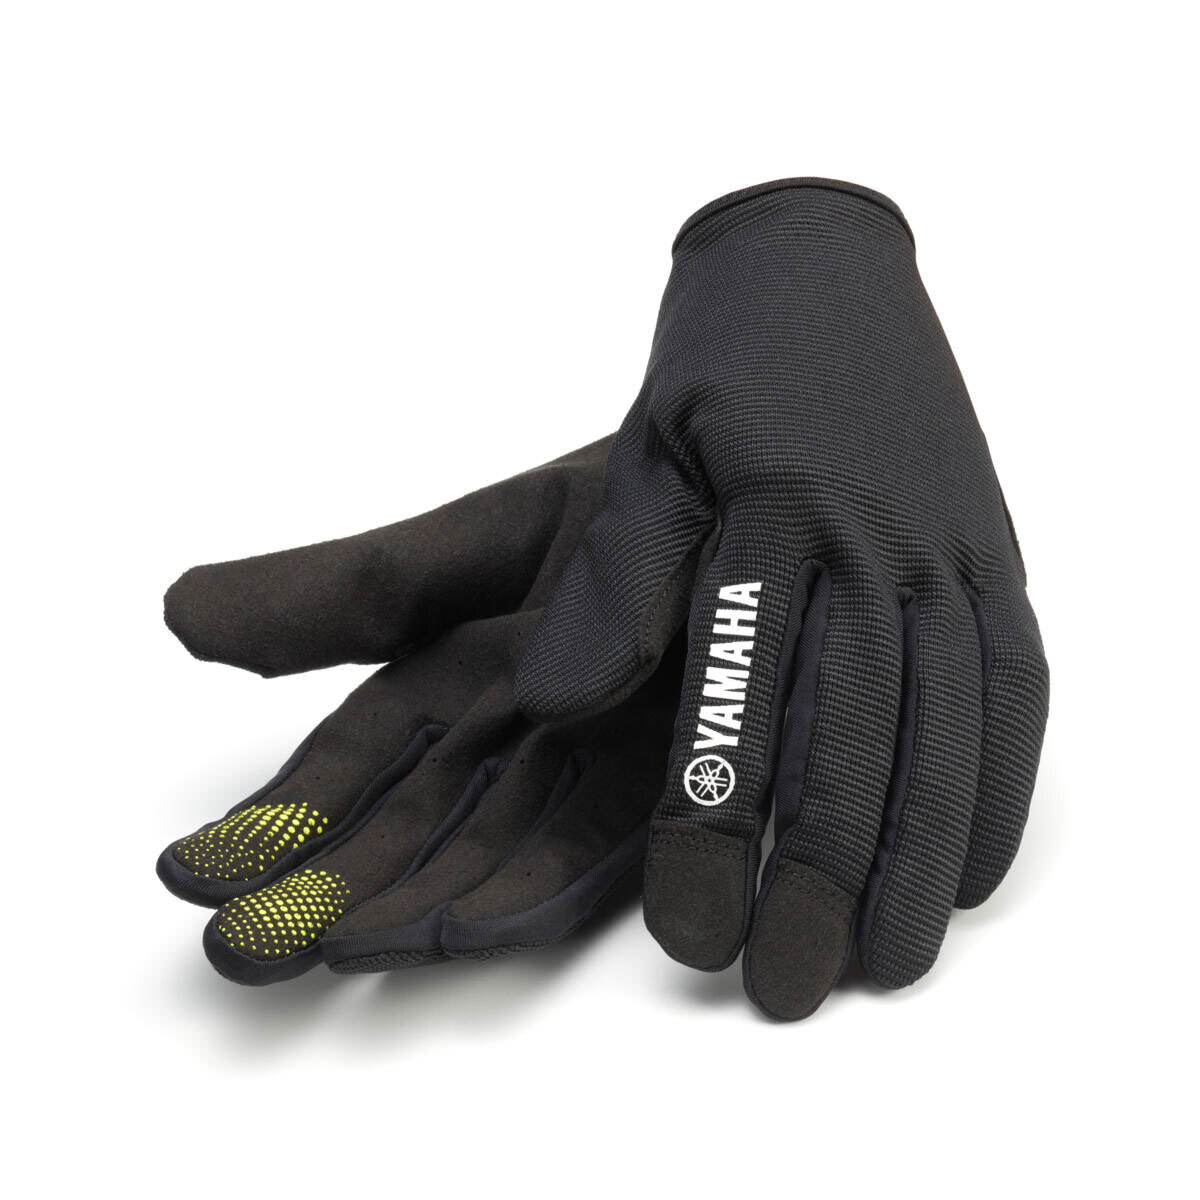 Yamaha Men's Mountain Bike Gloves